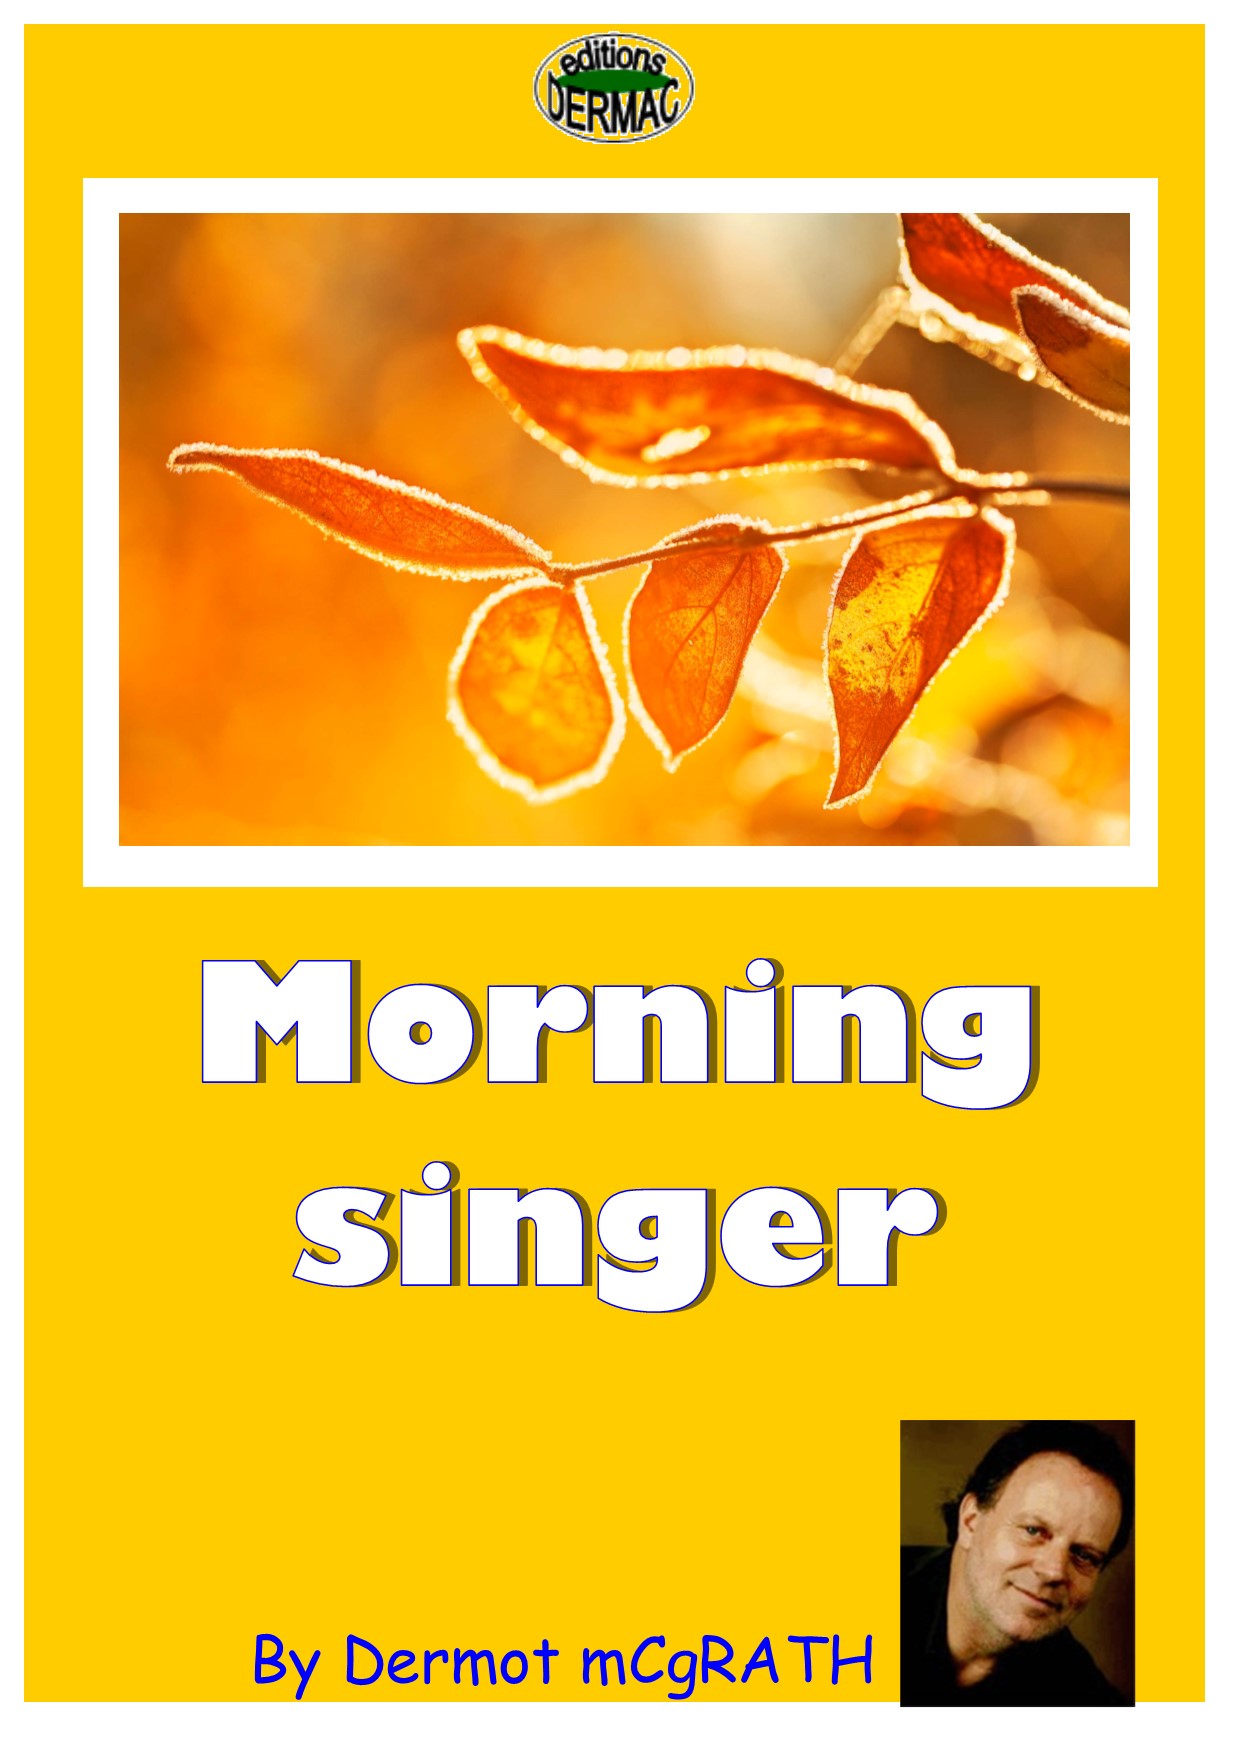 Morning singer